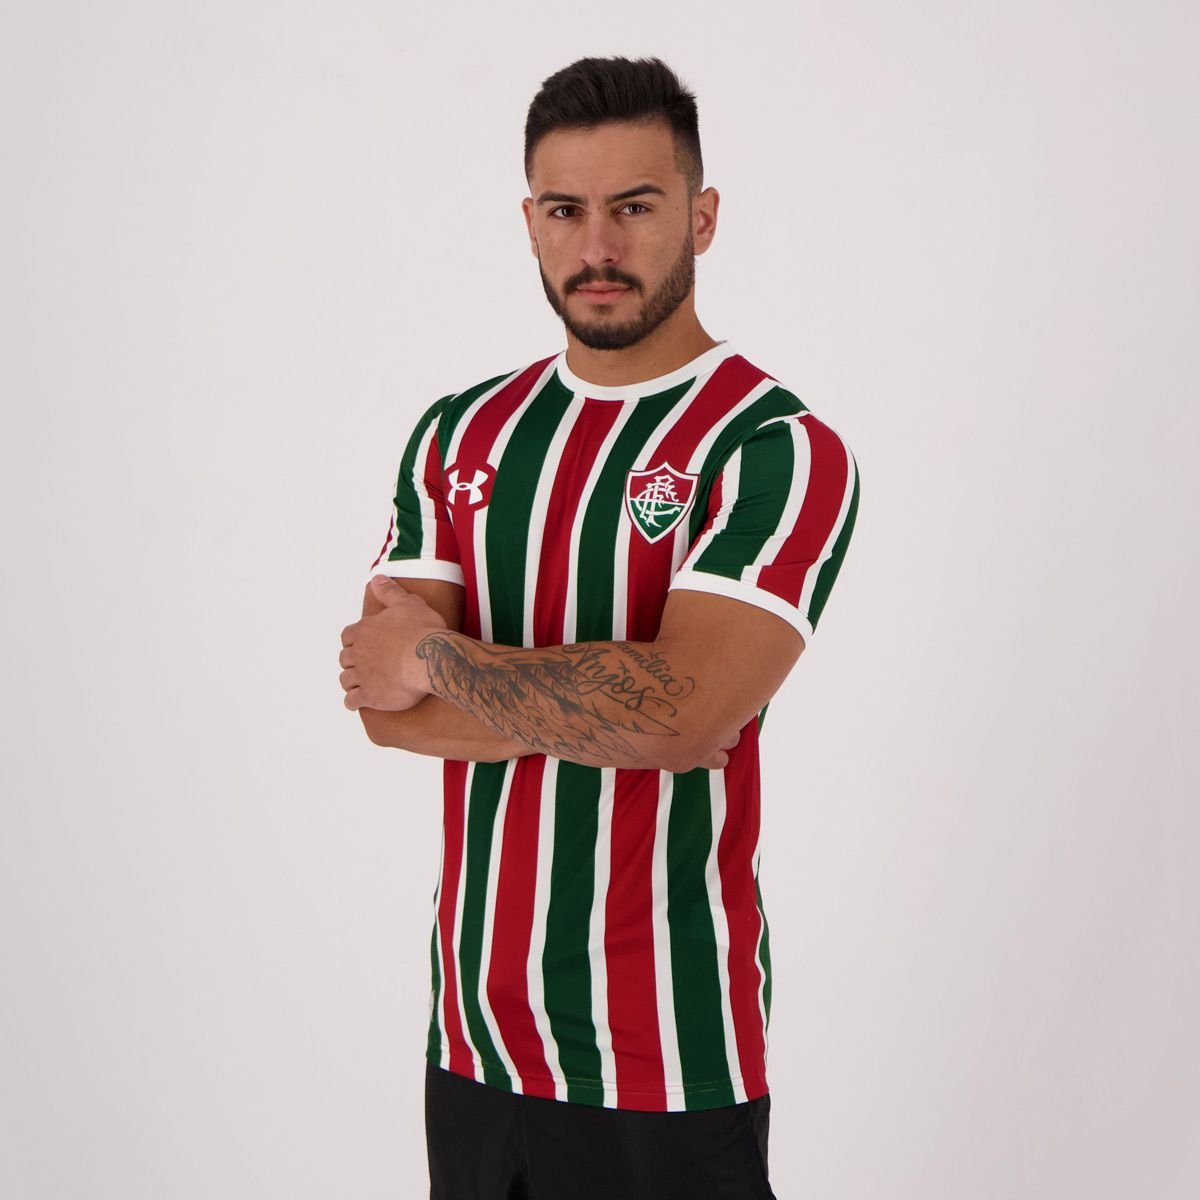 Camisas de times em promoção: Fluminense